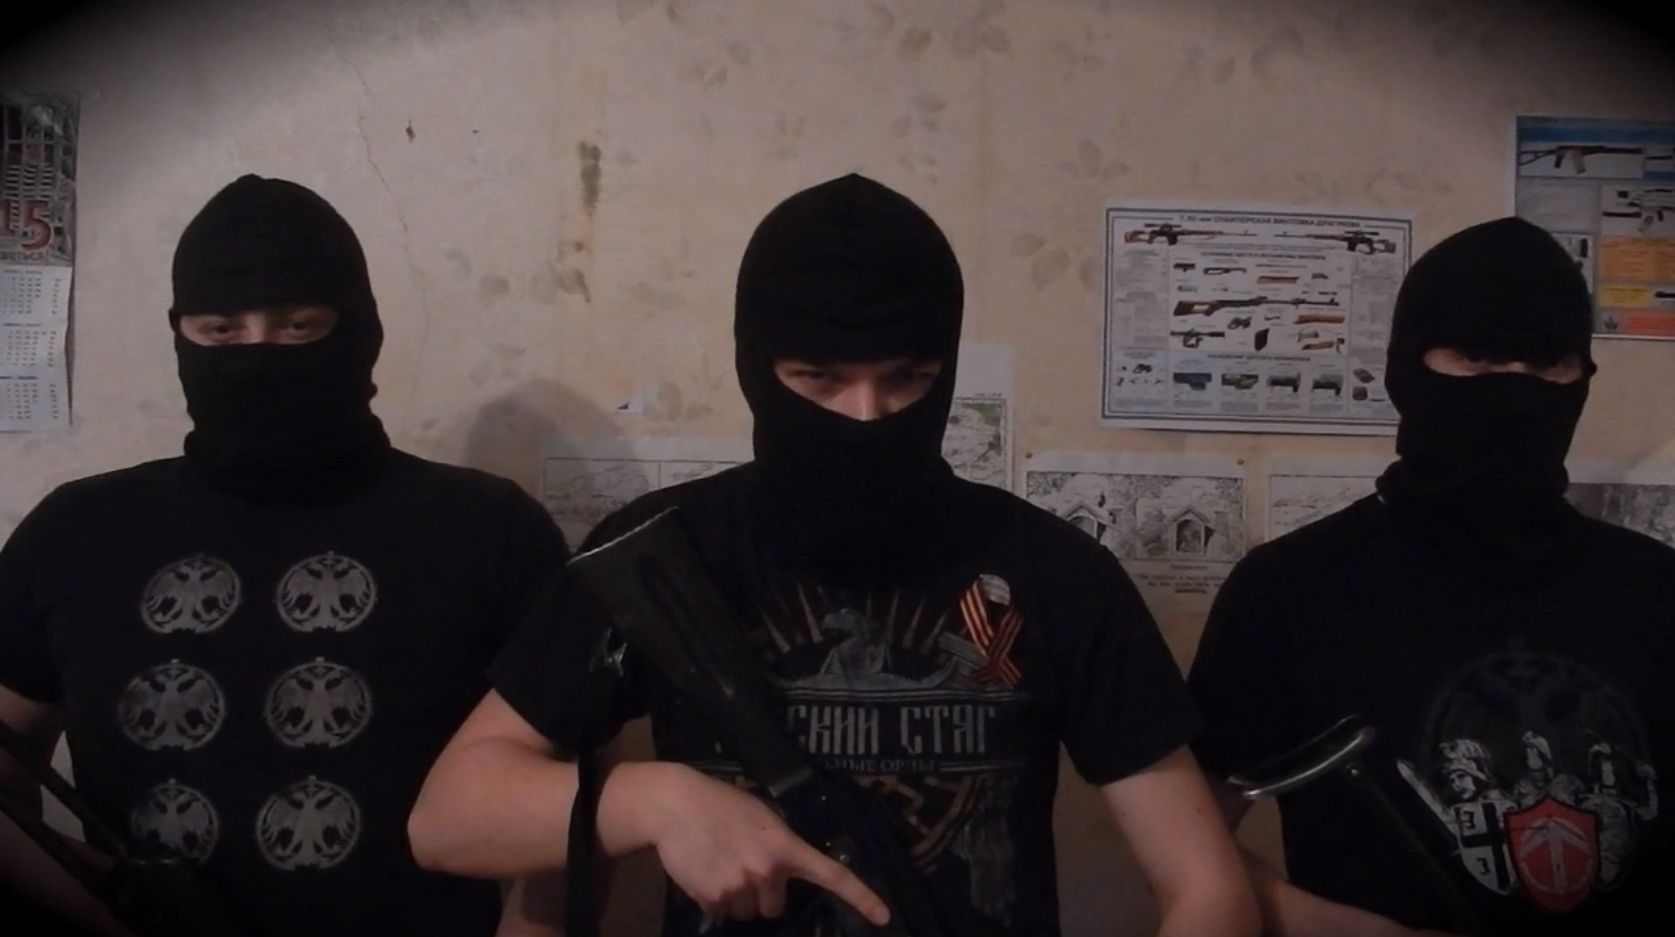 Diverzní skupiny Rusič na sebe vzala sebe odpovědnost za vraždu Borise Němcova.